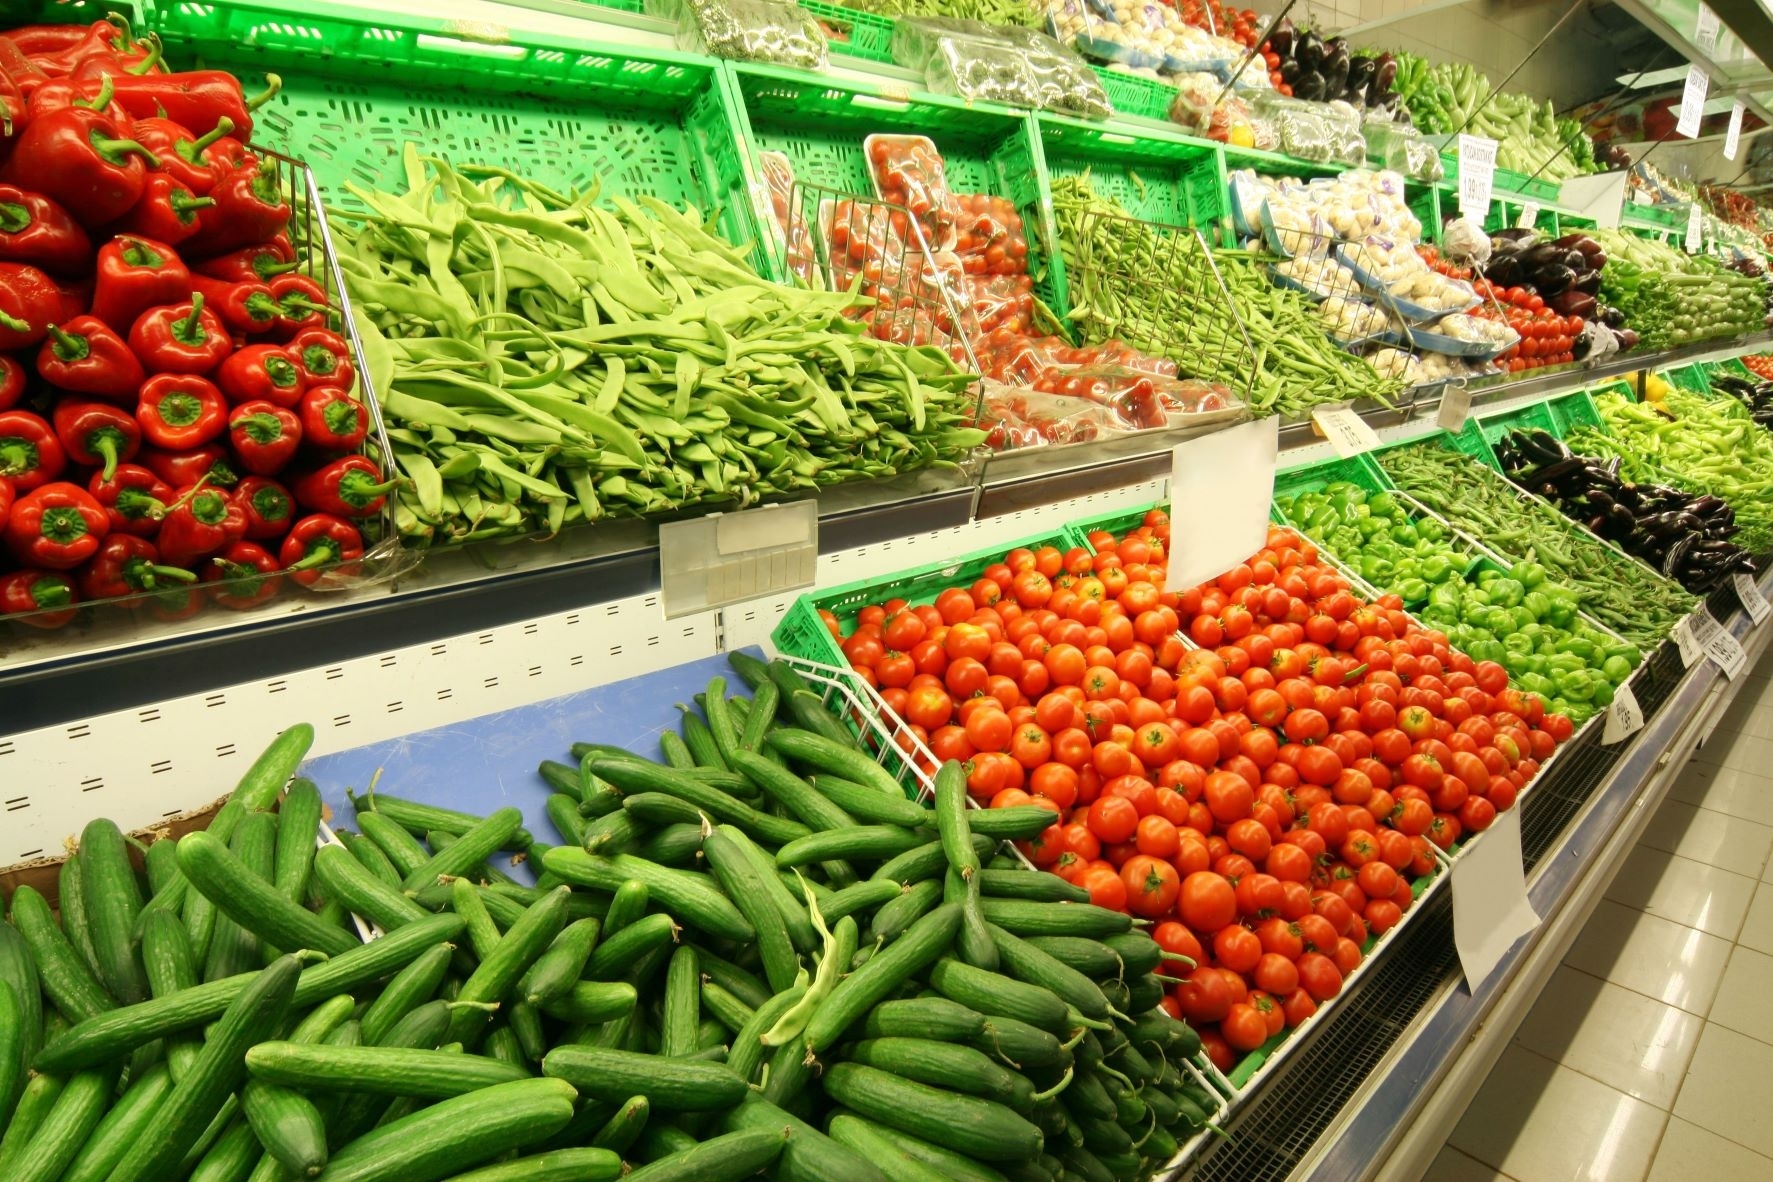 Dėl tiekimo problemų dalis JK prekybos centrų ėmė normuoti vaisių ir daržovių pardavimą